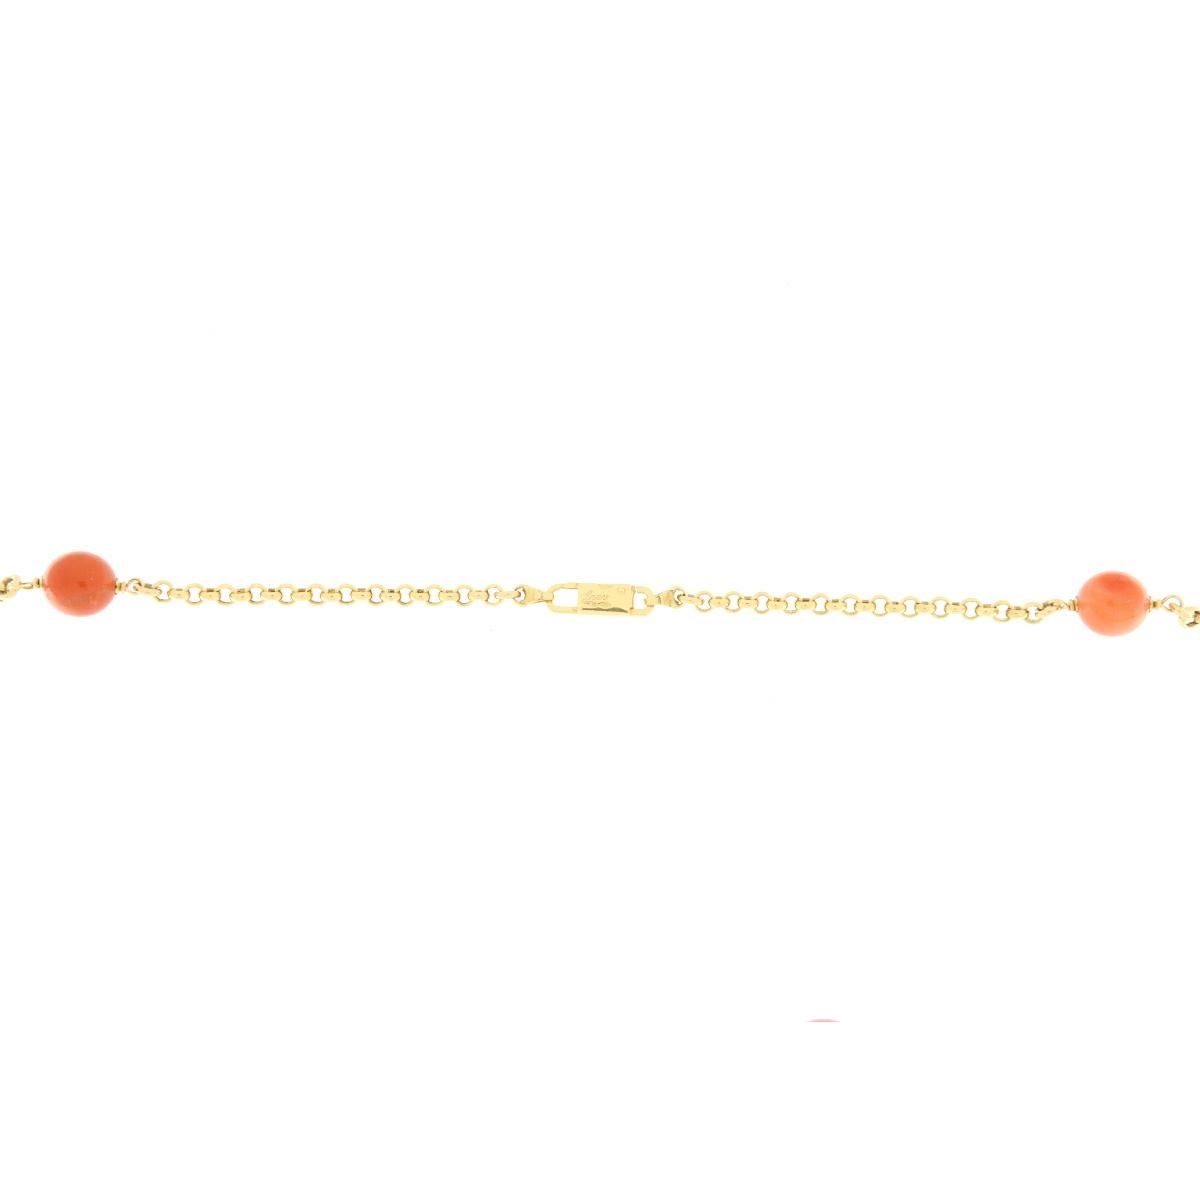 La collana in oro giallo è lunga cm.95 ed è intervallata da sfere in corallo giapponese color arancio, perle australiane e rondelle in quarzo lemon sfaccetate. Das Magazin der Sammlung ist eine Rolle. Das Bündel kann sowohl in die Länge als auch in